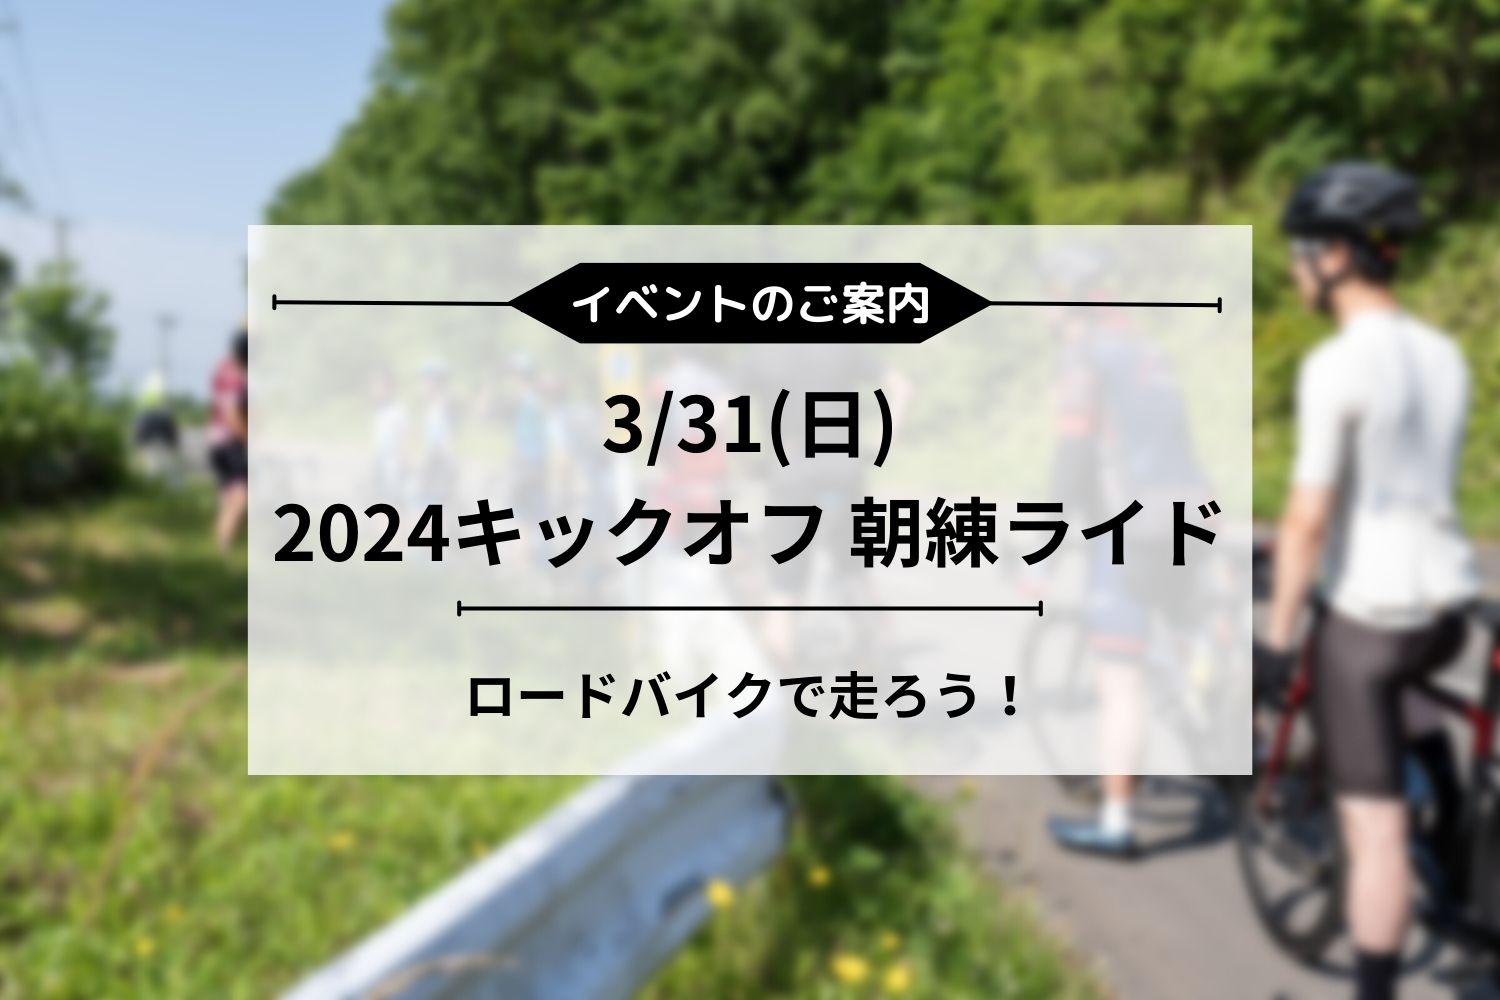 3/31(日) 2024キックオフ 朝練ロードライド開催